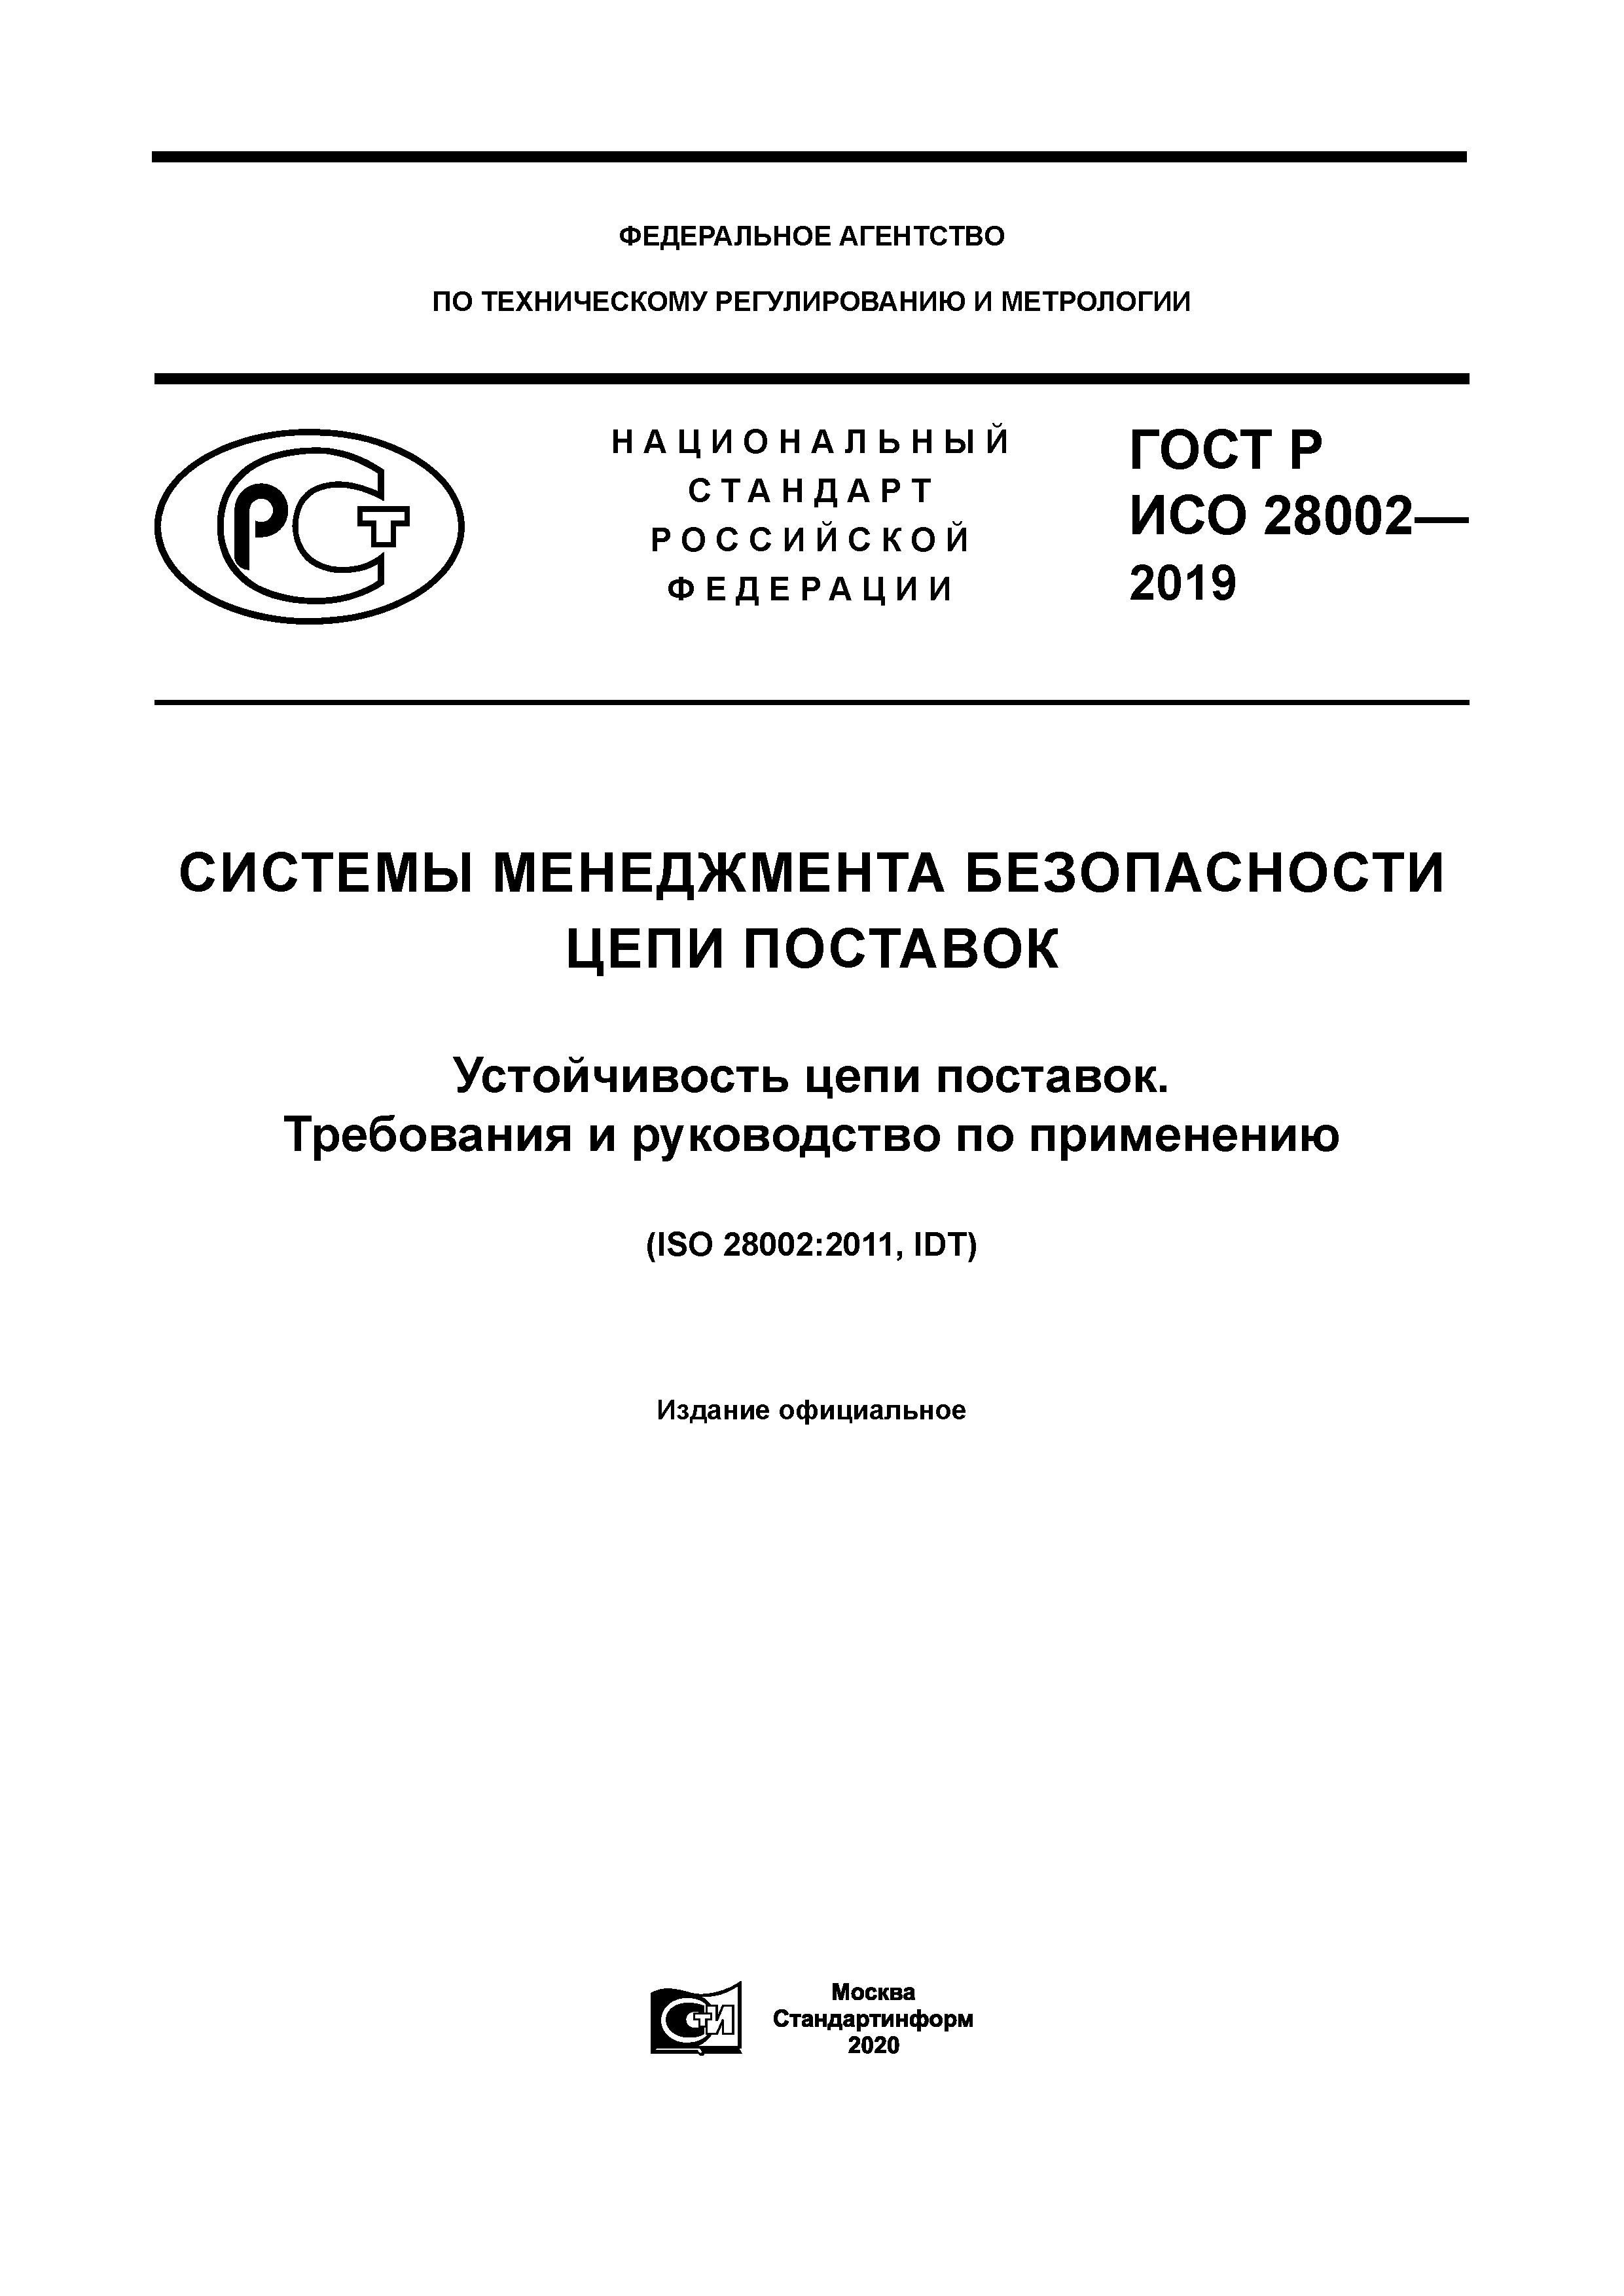 ГОСТ Р ИСО 28002-2019